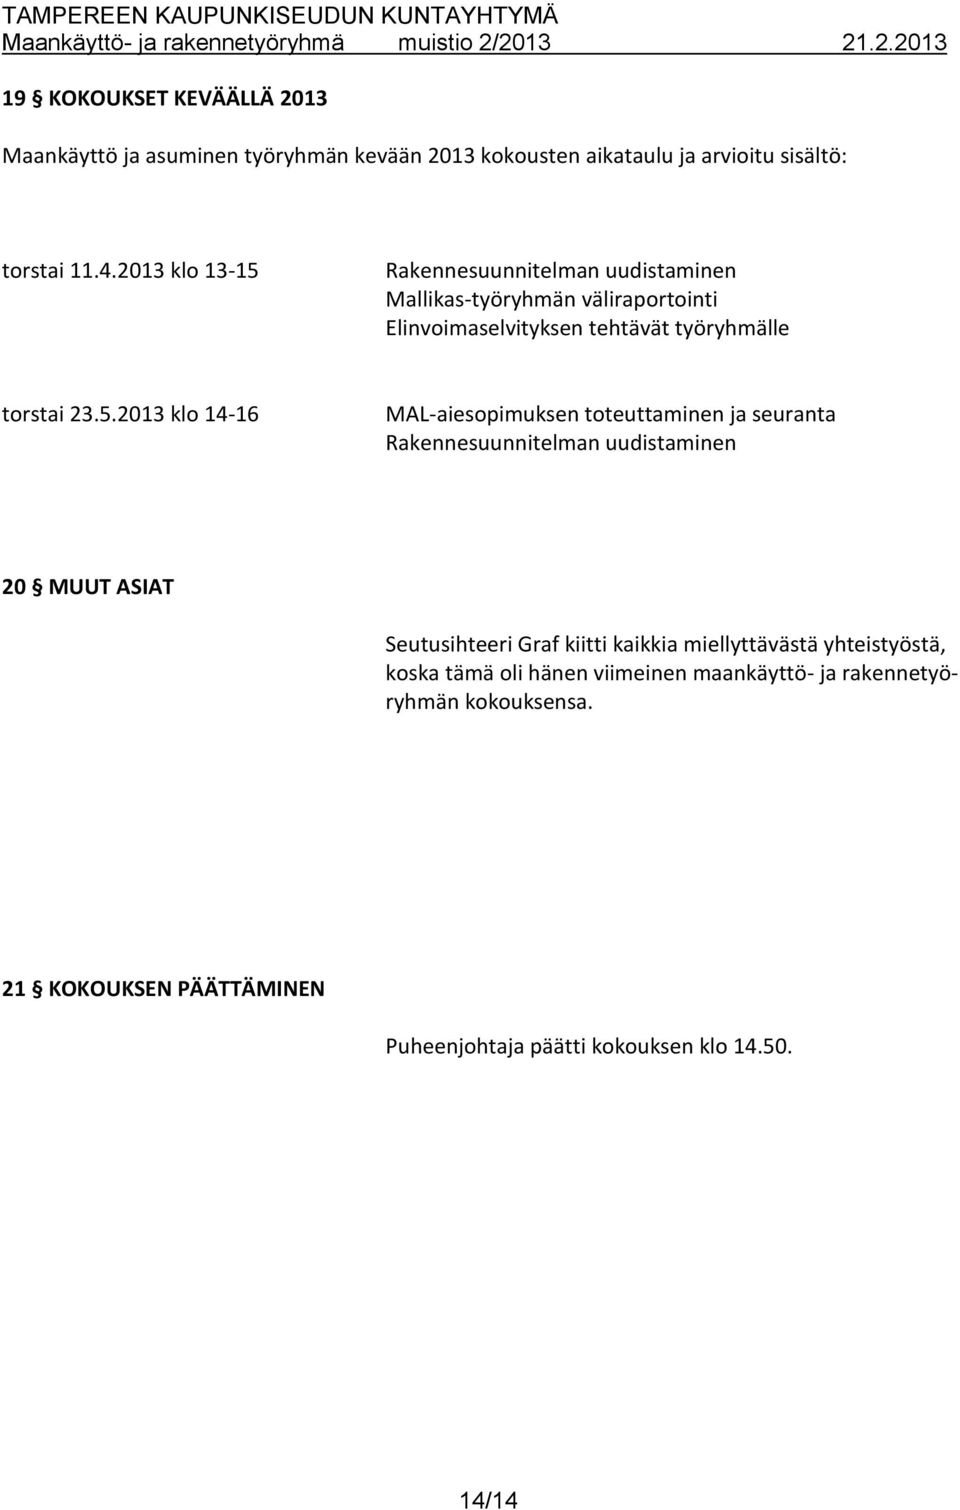 Rakennesuunnitelman uudistaminen Mallikas-työryhmän väliraportointi Elinvoimaselvityksen tehtävät työryhmälle torstai 23.5.